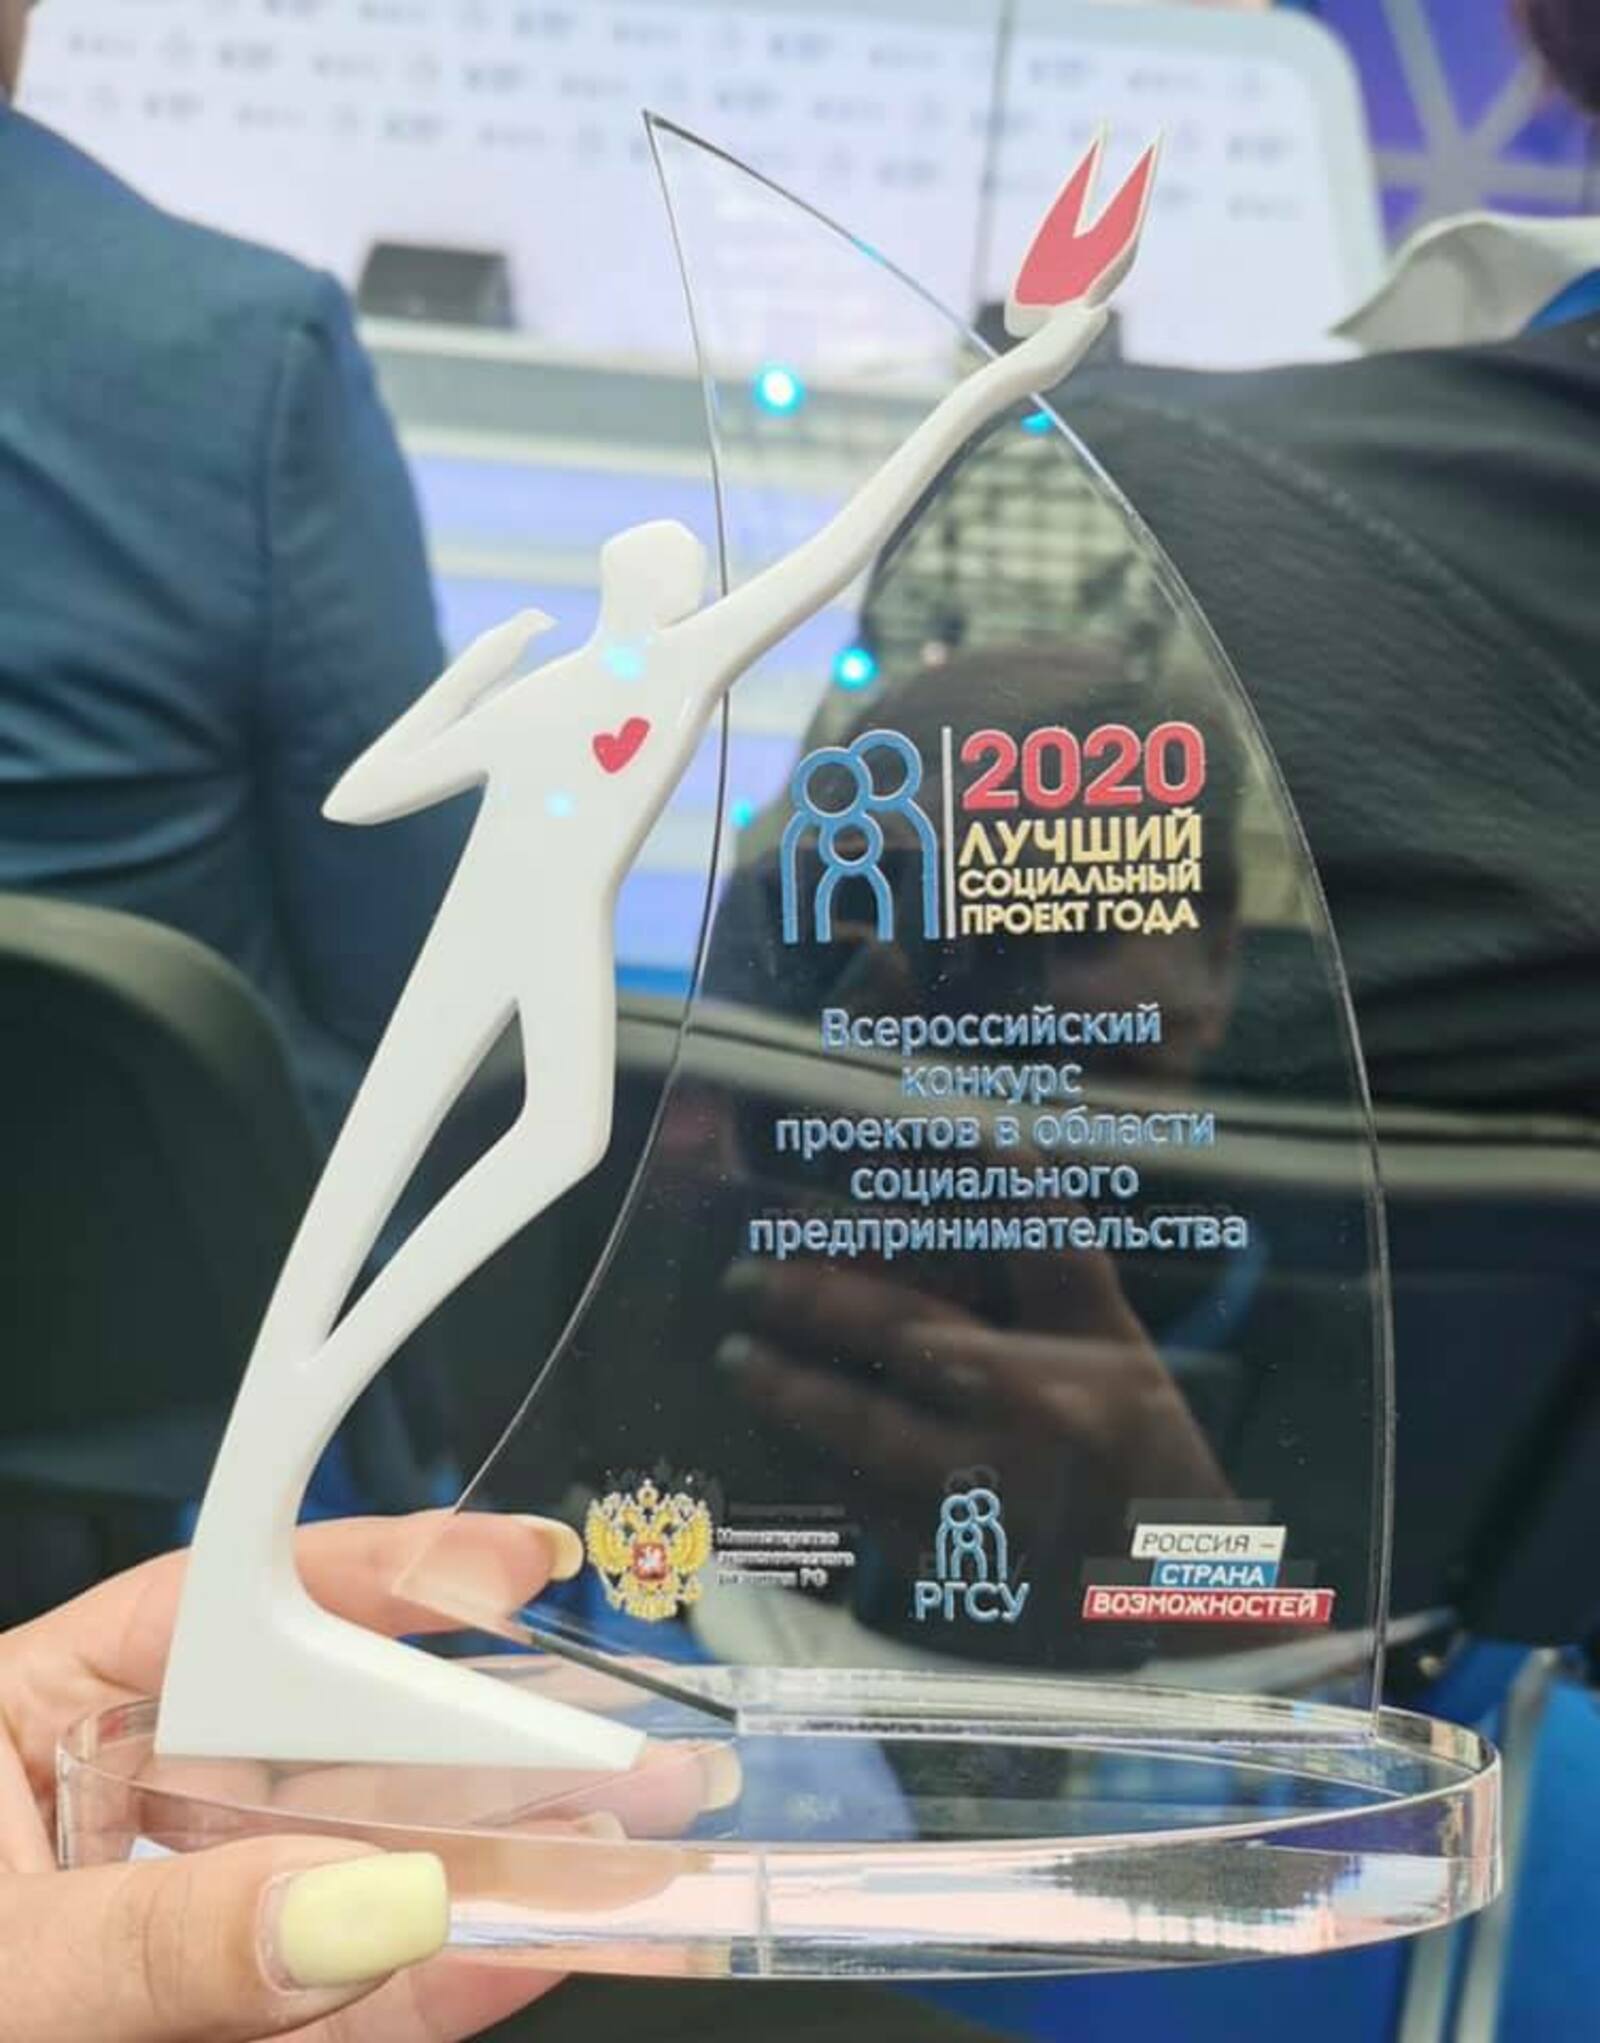 Предприниматели Башкирии стали лауреатами конкурса «Лучший социальный проект года»